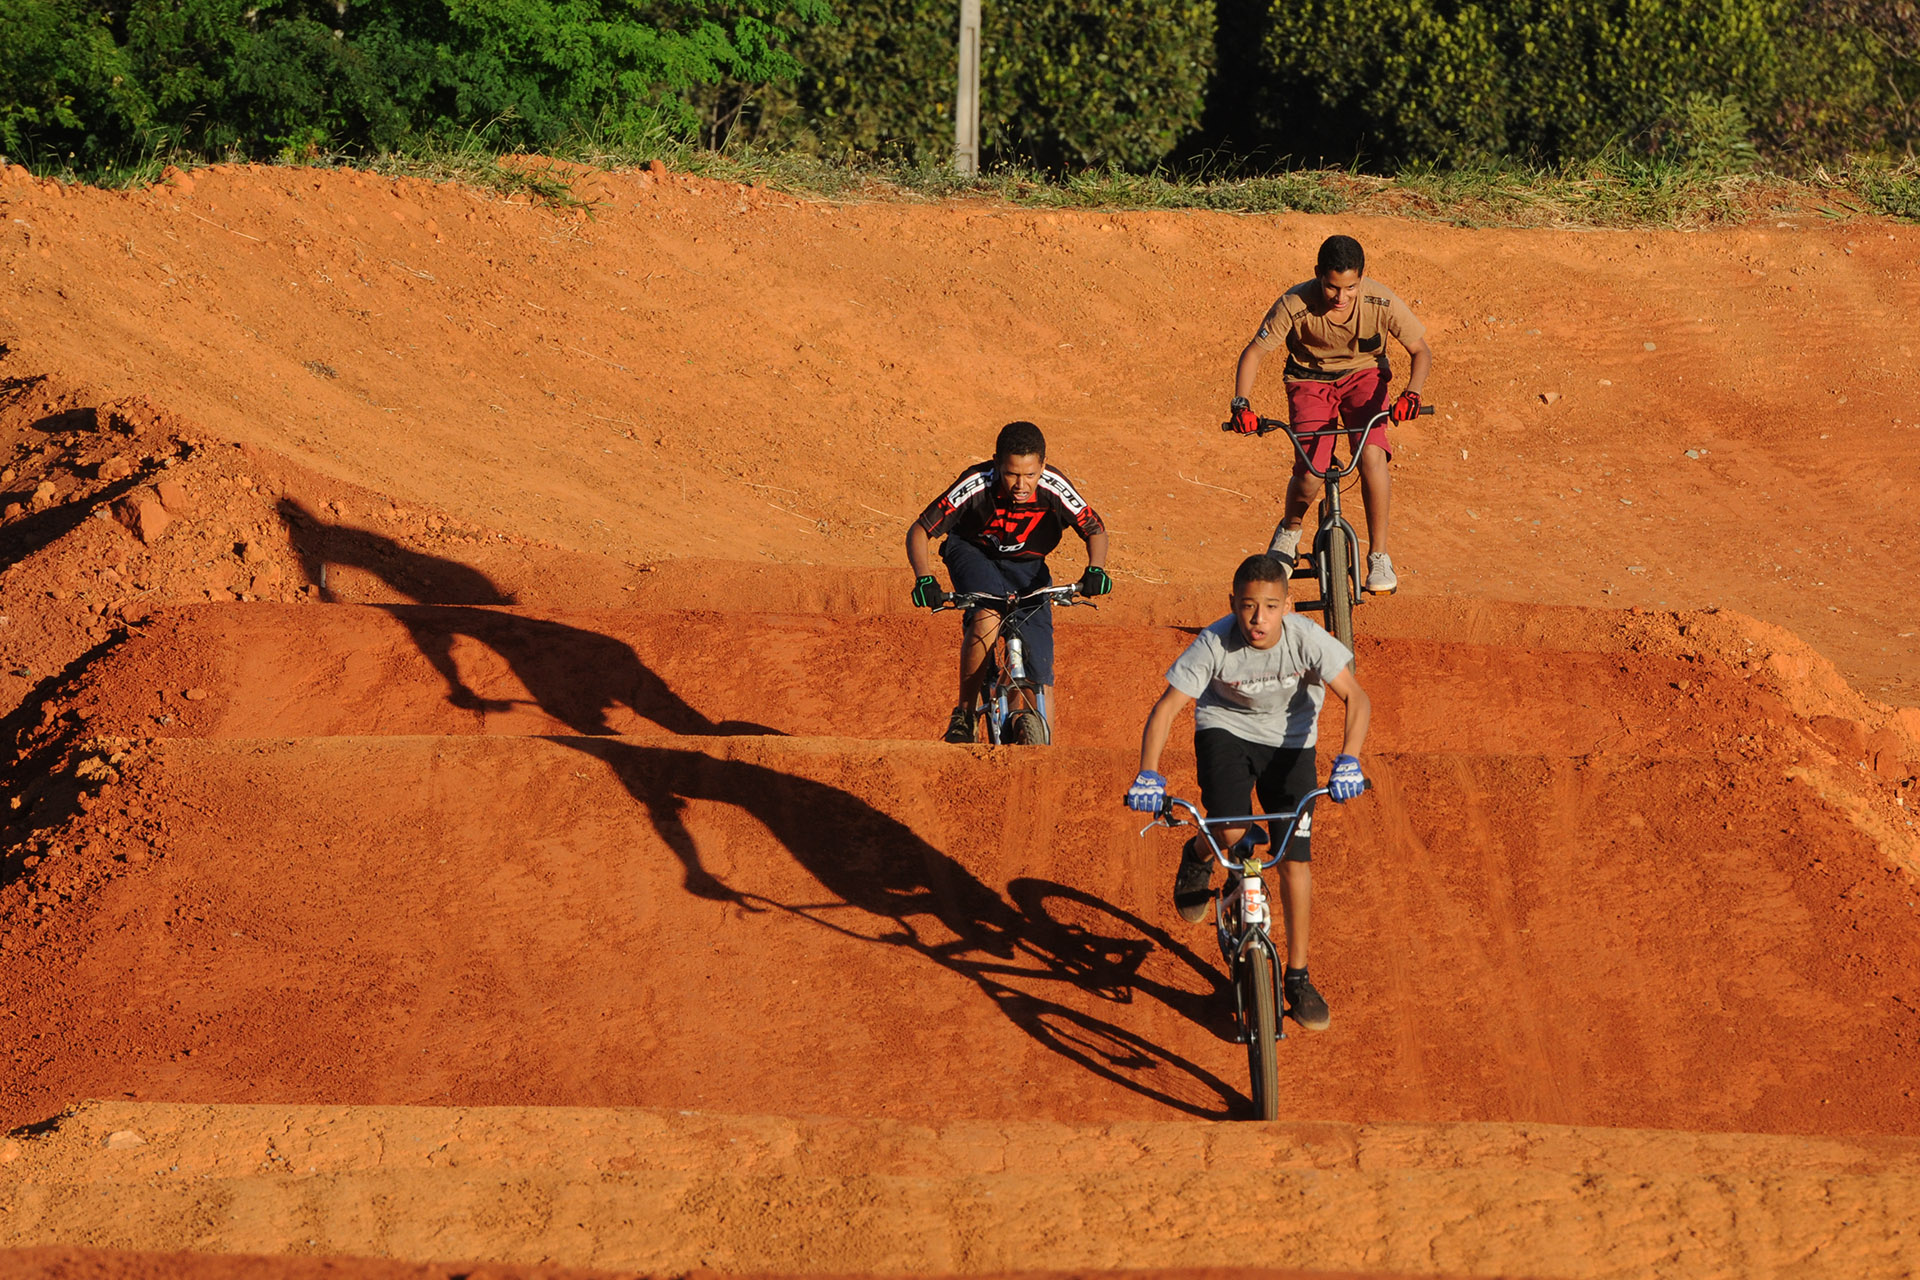 A inauguração oficial da pista de bicicross será em julho, mas adeptos do esporte já usam a estrutura construída pelo governo de Brasília após pedido dos moradores da região.